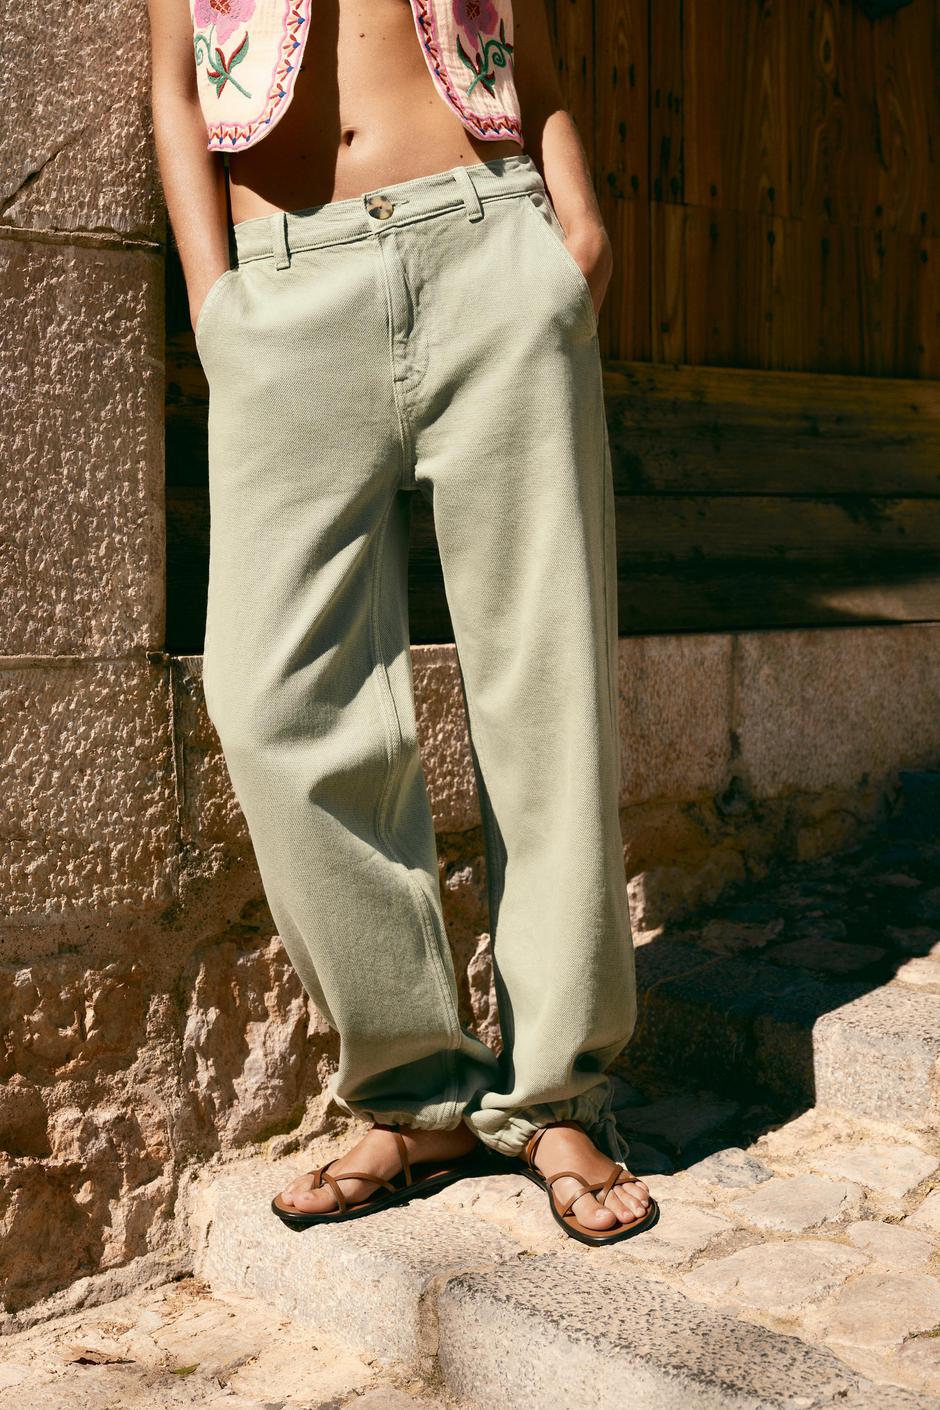 Foto: Zara, hlače (prije 25,95 - sada 15,99 eura) | Autor: Zara